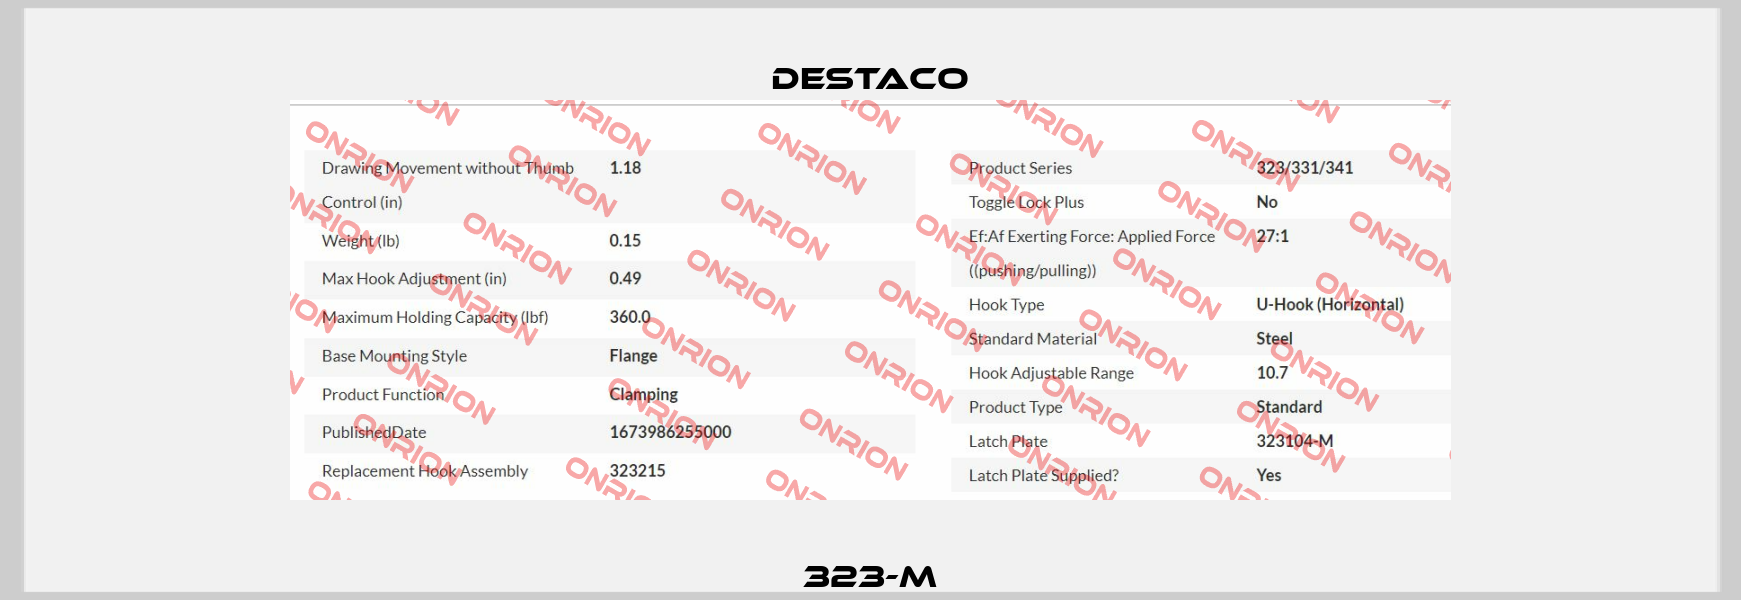 323-M Destaco